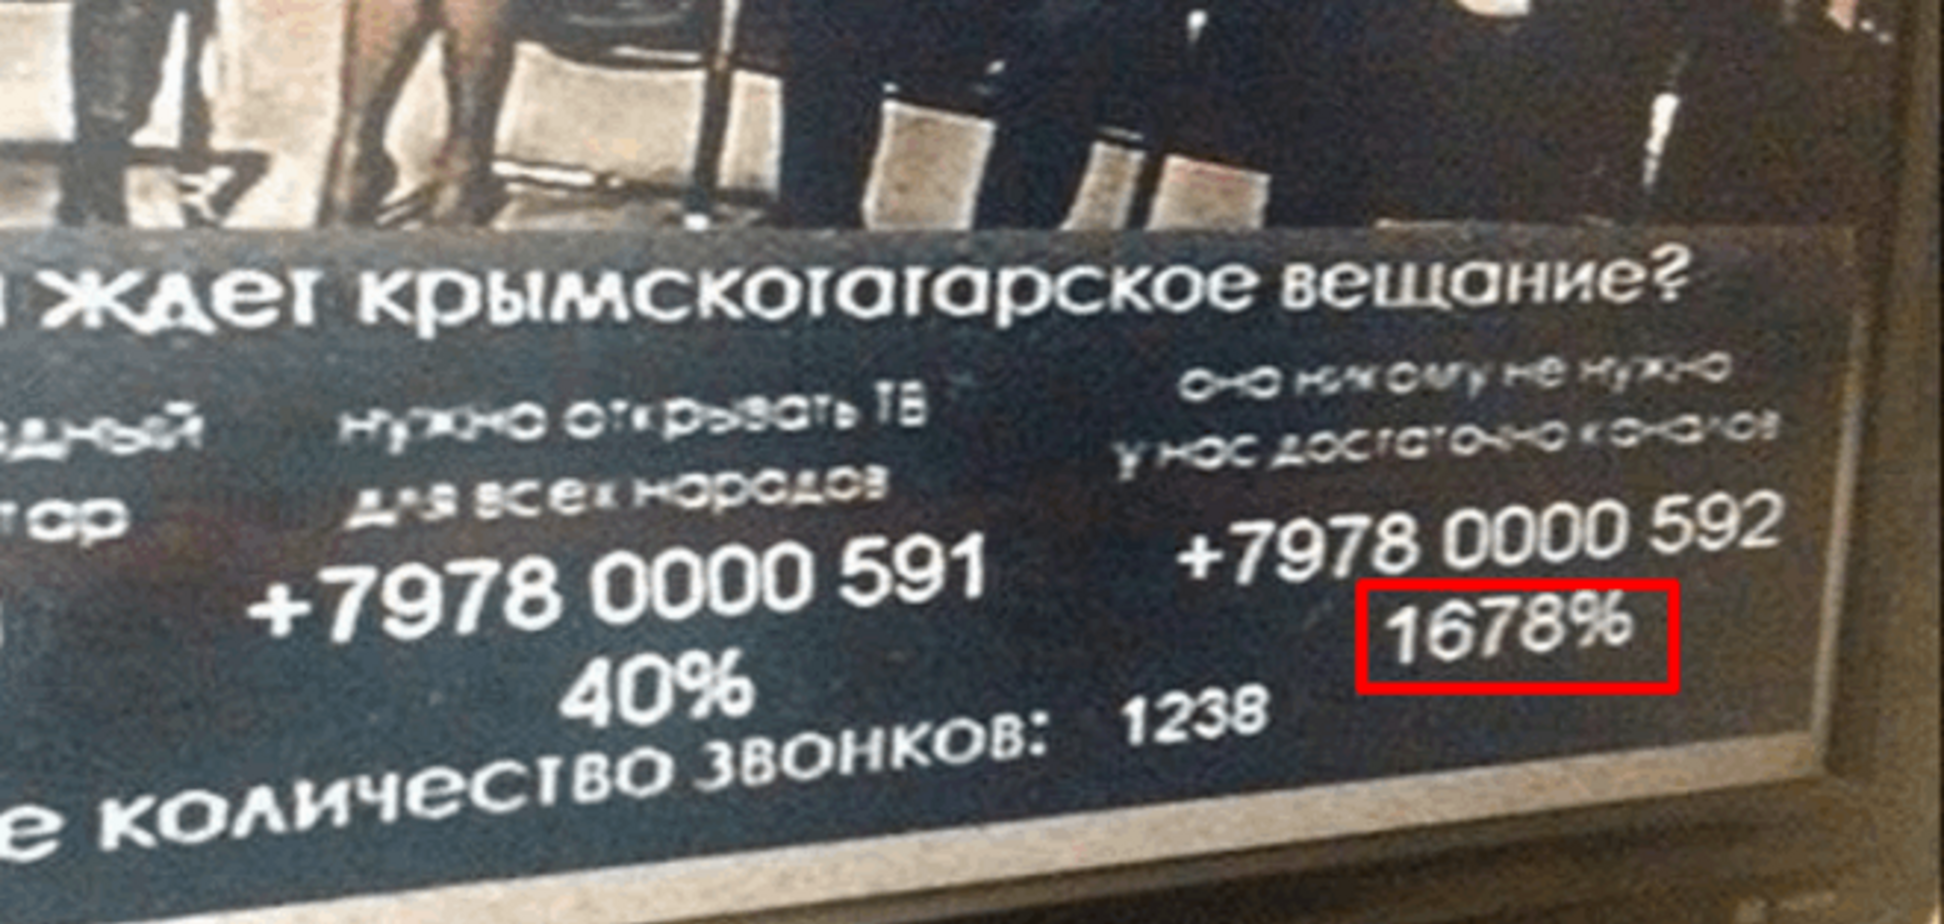 Отличились! В Крыму сообщили, что 1678% против телеканала ATR: фотофакт